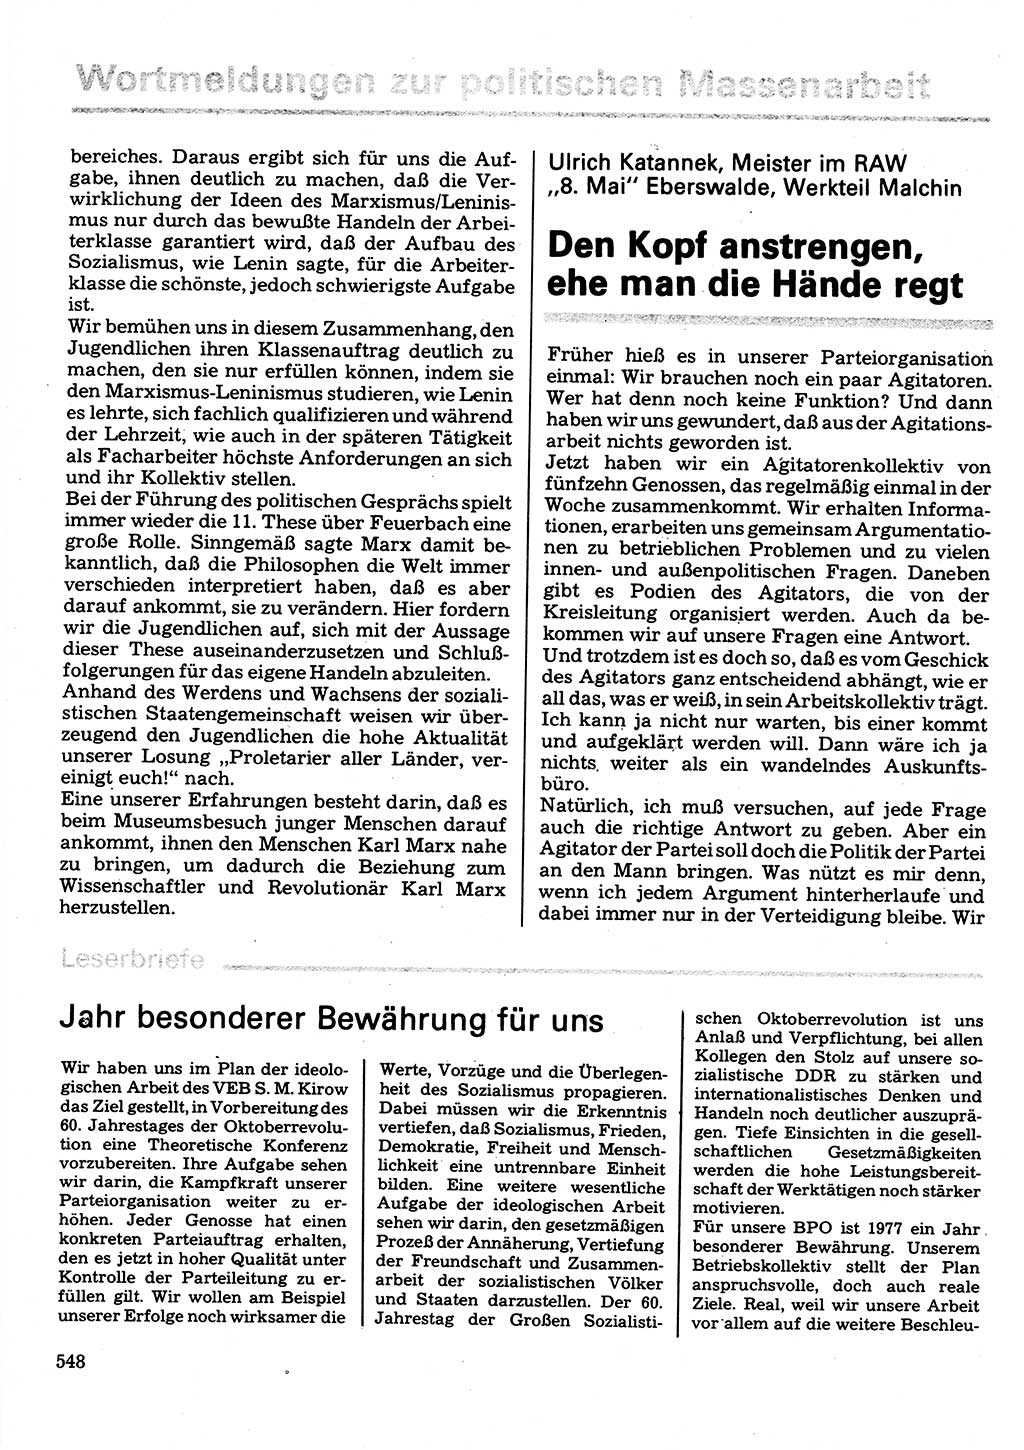 Neuer Weg (NW), Organ des Zentralkomitees (ZK) der SED (Sozialistische Einheitspartei Deutschlands) für Fragen des Parteilebens, 32. Jahrgang [Deutsche Demokratische Republik (DDR)] 1977, Seite 548 (NW ZK SED DDR 1977, S. 548)